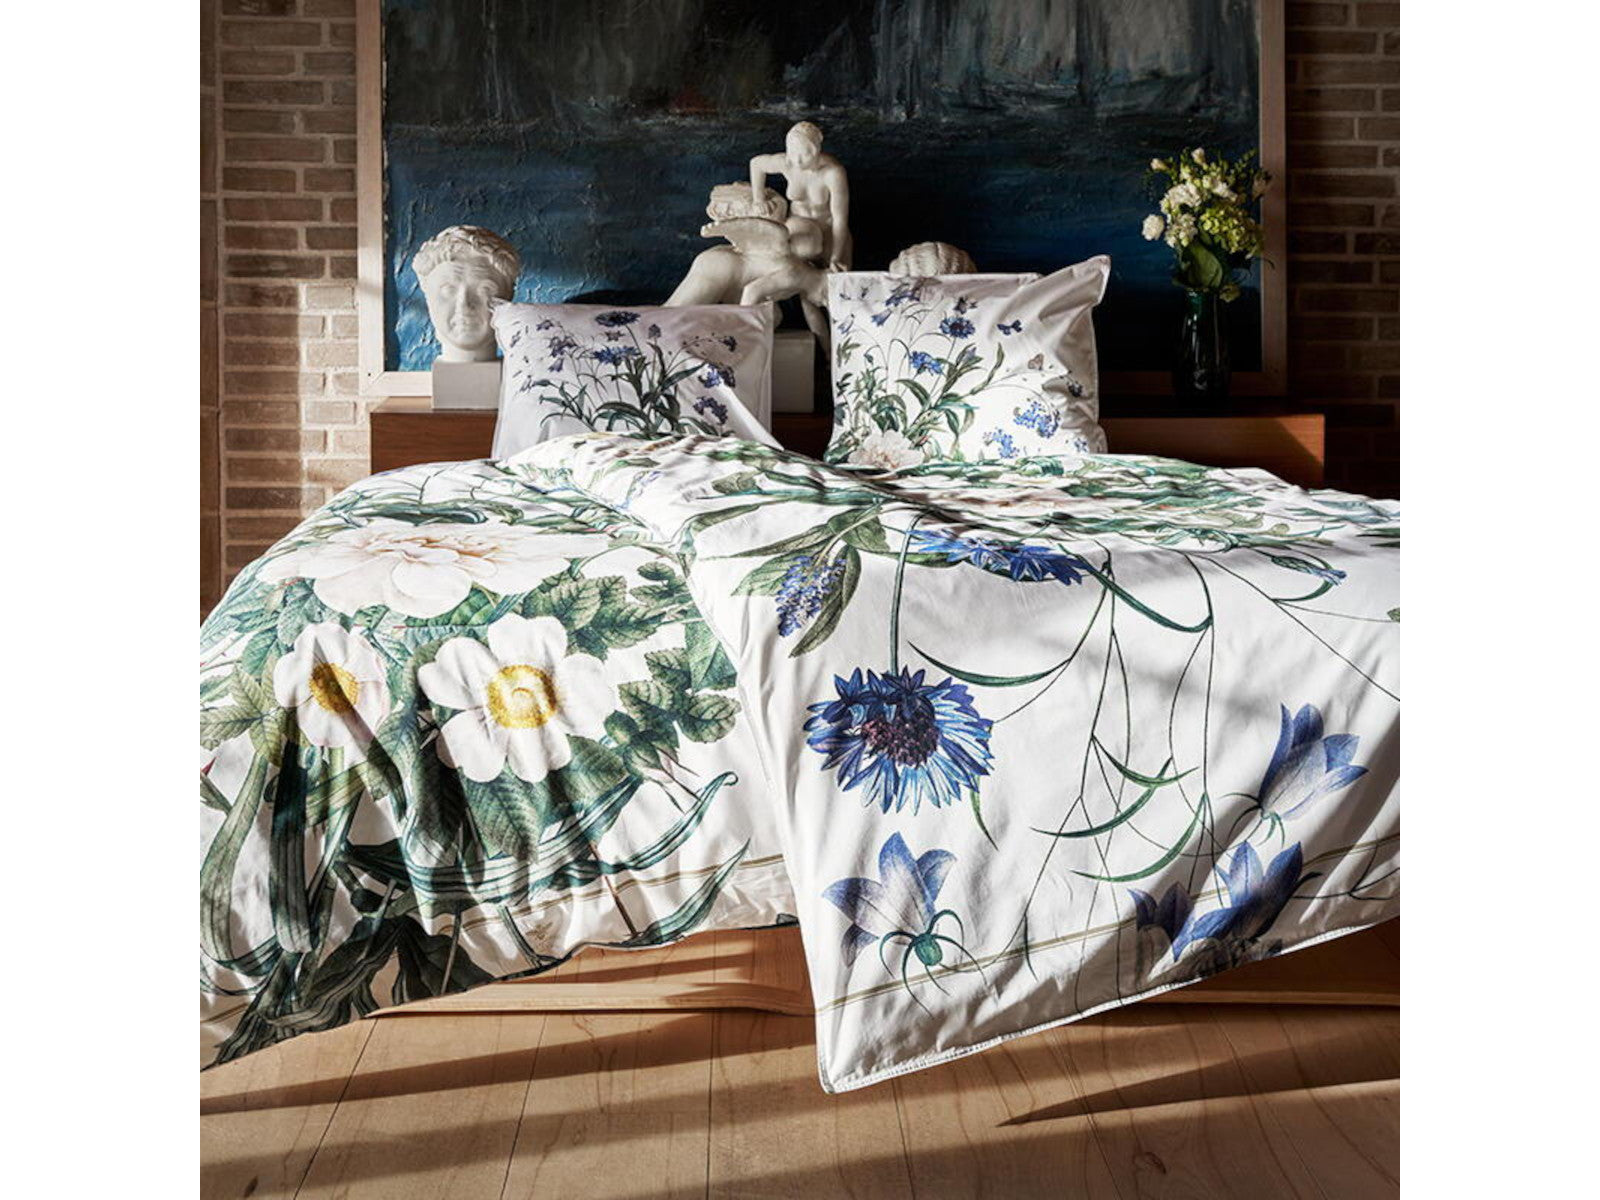 Jim Lyngvild Økologisk sengetøj Flower Garden Blue 140x220cm